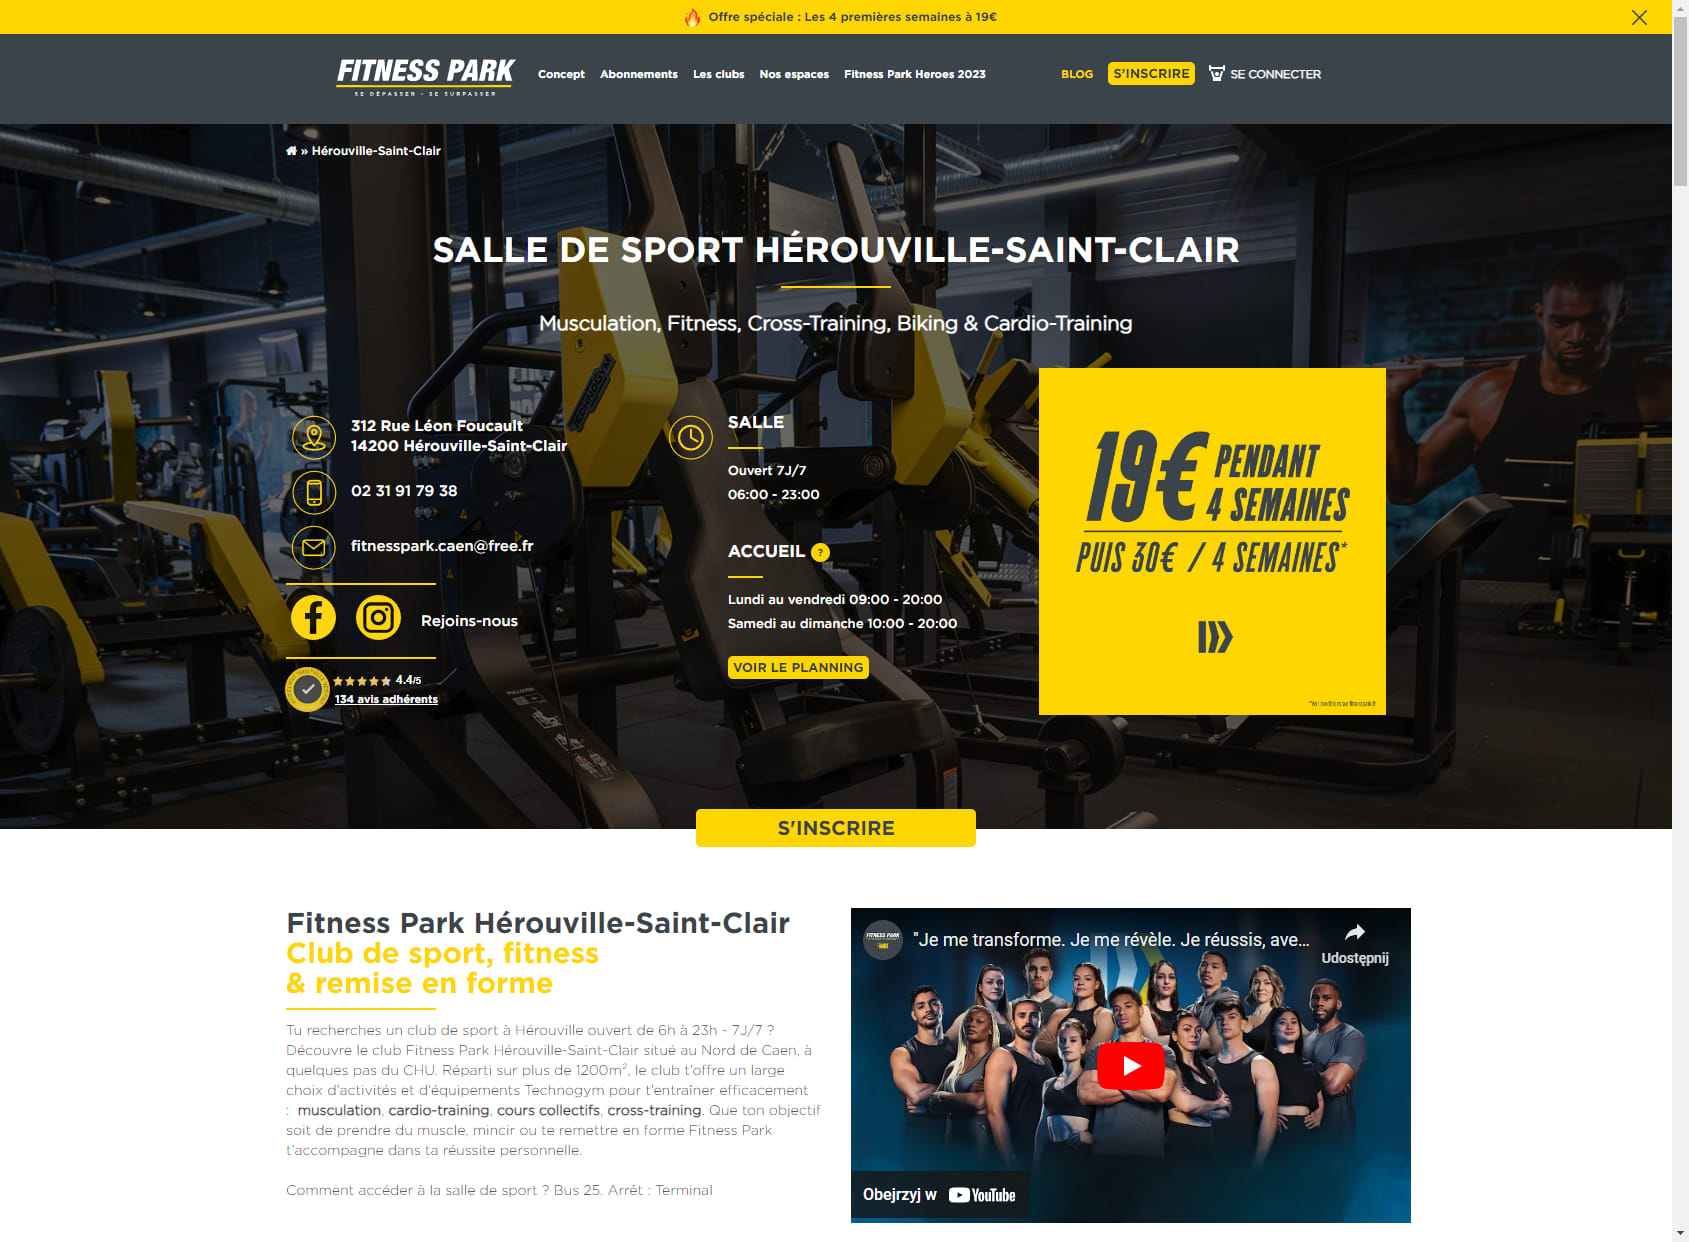 Salle de sport Hérouville-Saint-Clair - Fitness Park